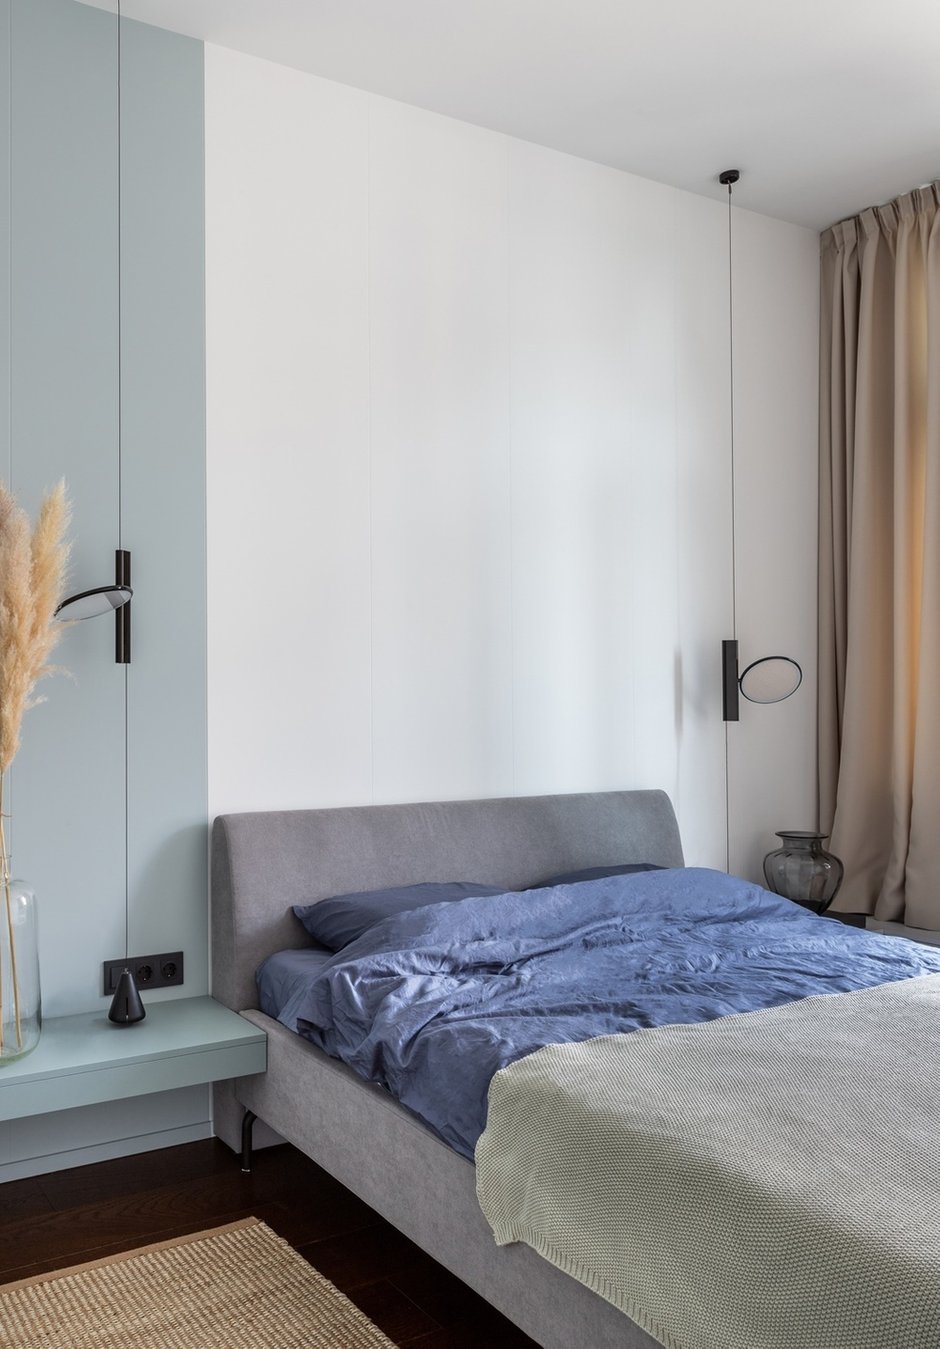 Вход в спальню сделан через небольшую гардеробную, что обеспечивает комнате дополнительную шумоизоляцию и удобно расположенное место для хранения вещей.